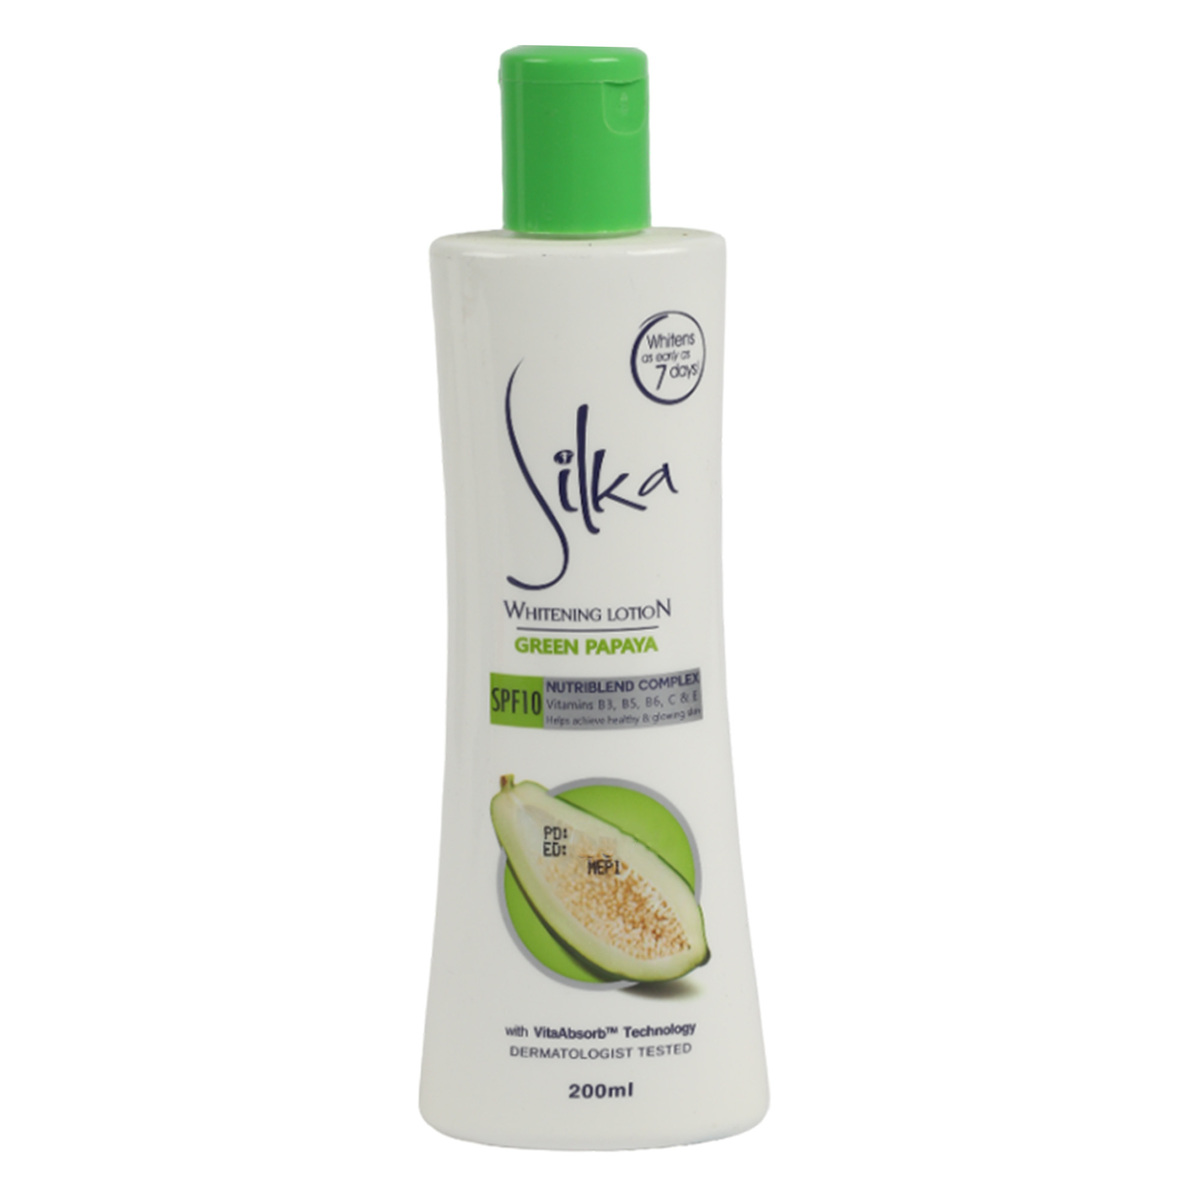 Silka Green Papaya Skin Whitening Lotion 200 ml